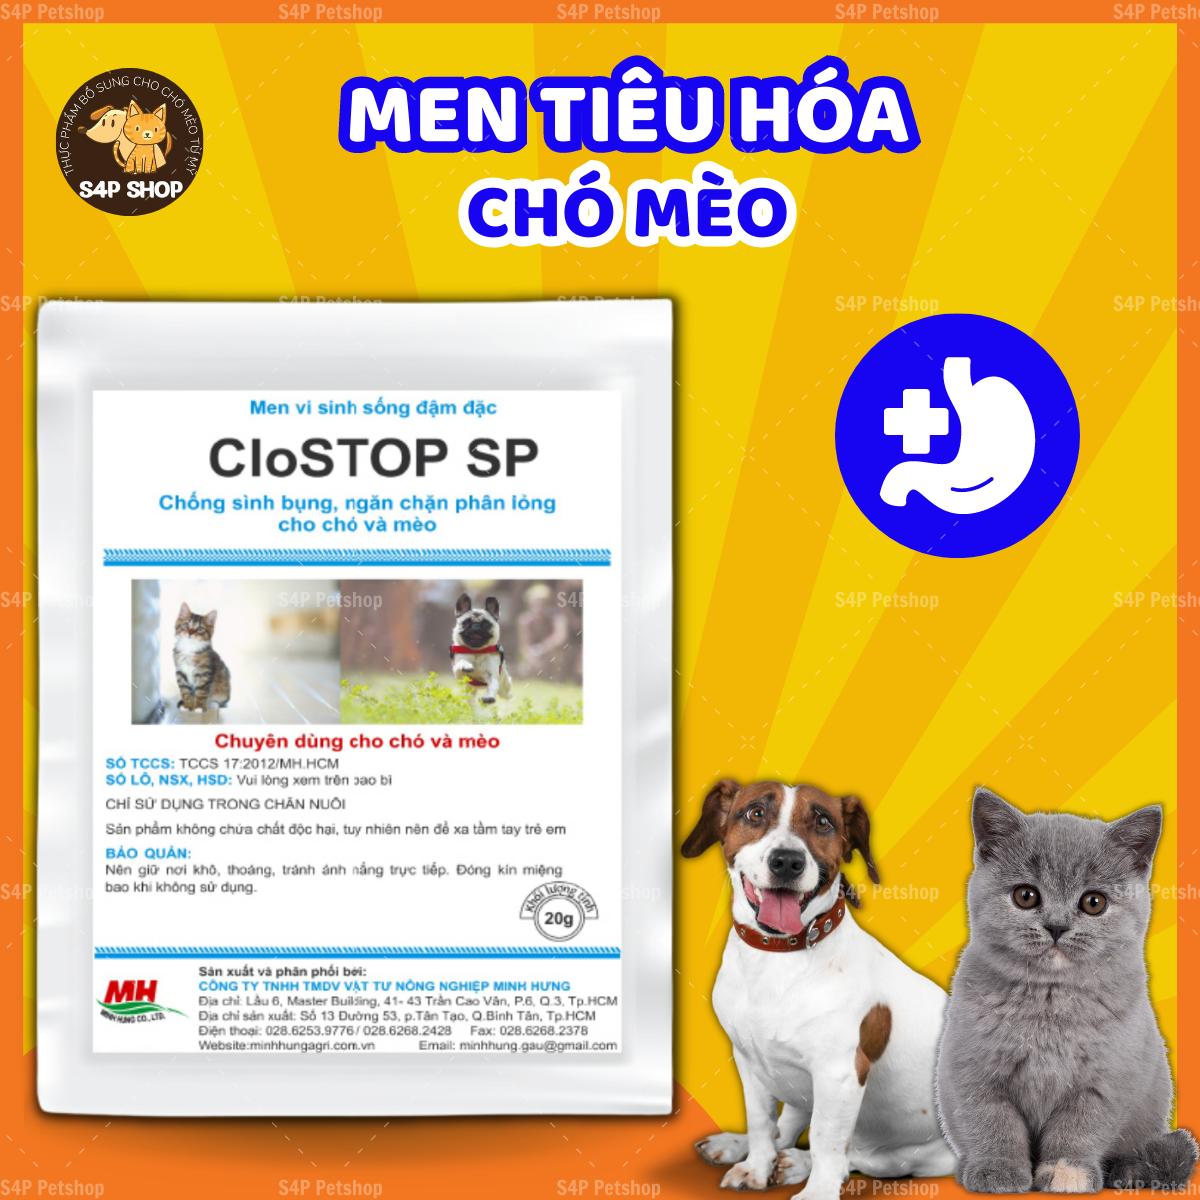 Men tiêu hóa Clostop SP cho chó mèo - 20g 1 gói